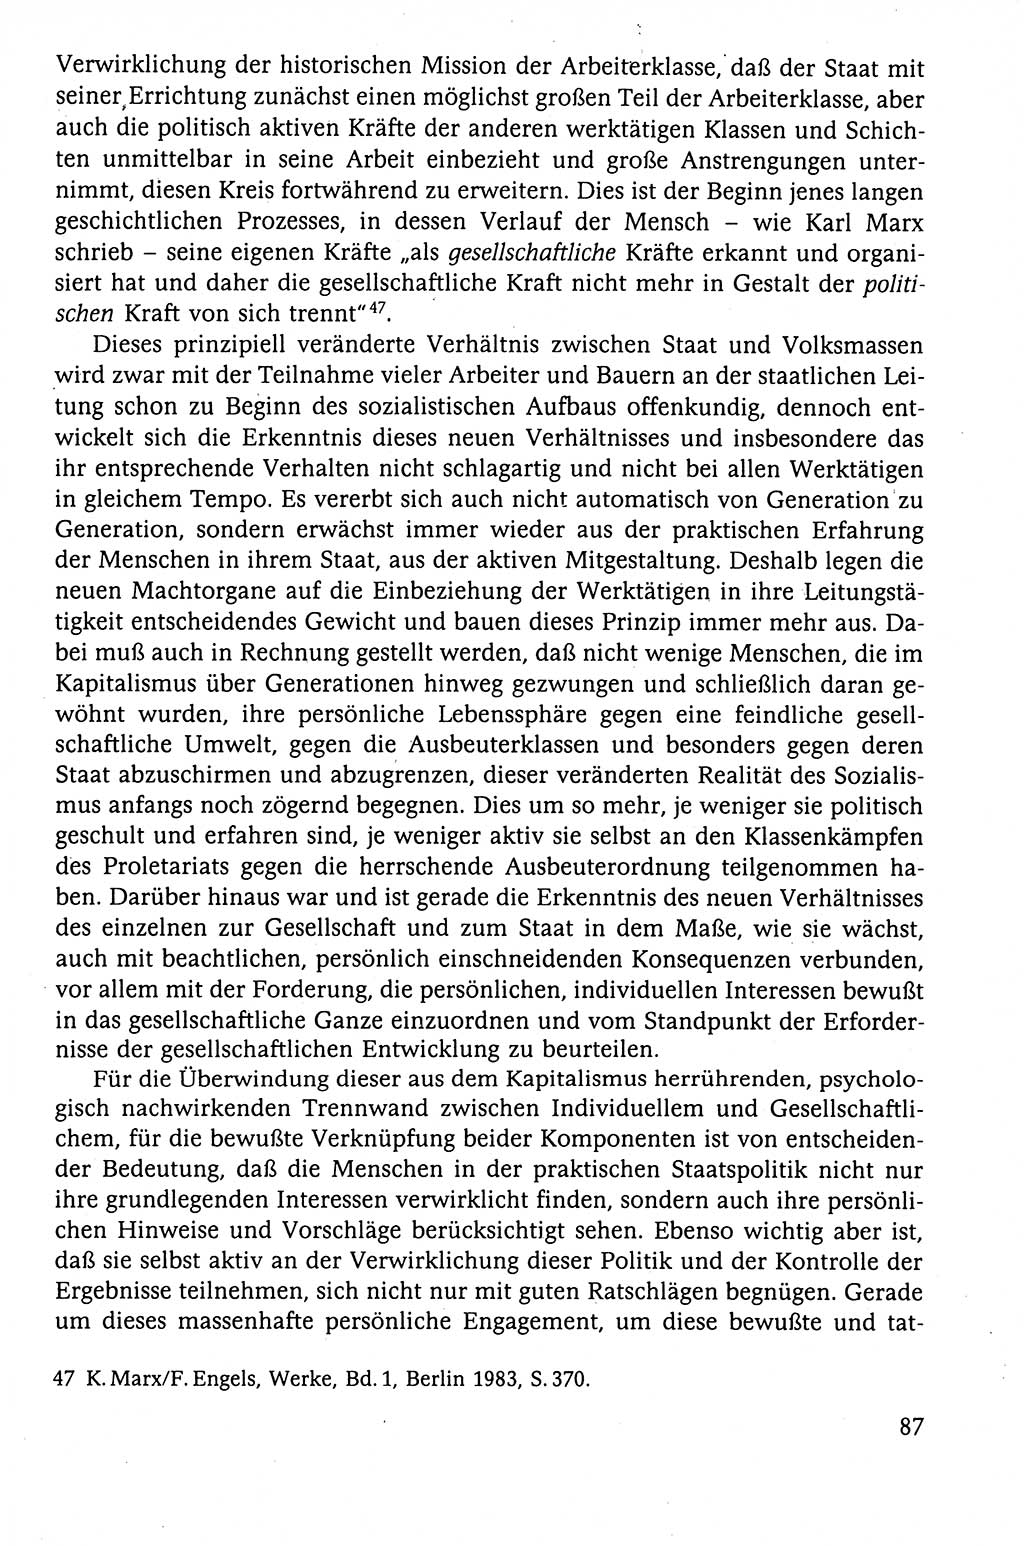 Der Staat im politischen System der DDR (Deutsche Demokratische Republik) 1986, Seite 87 (St. pol. Sys. DDR 1986, S. 87)